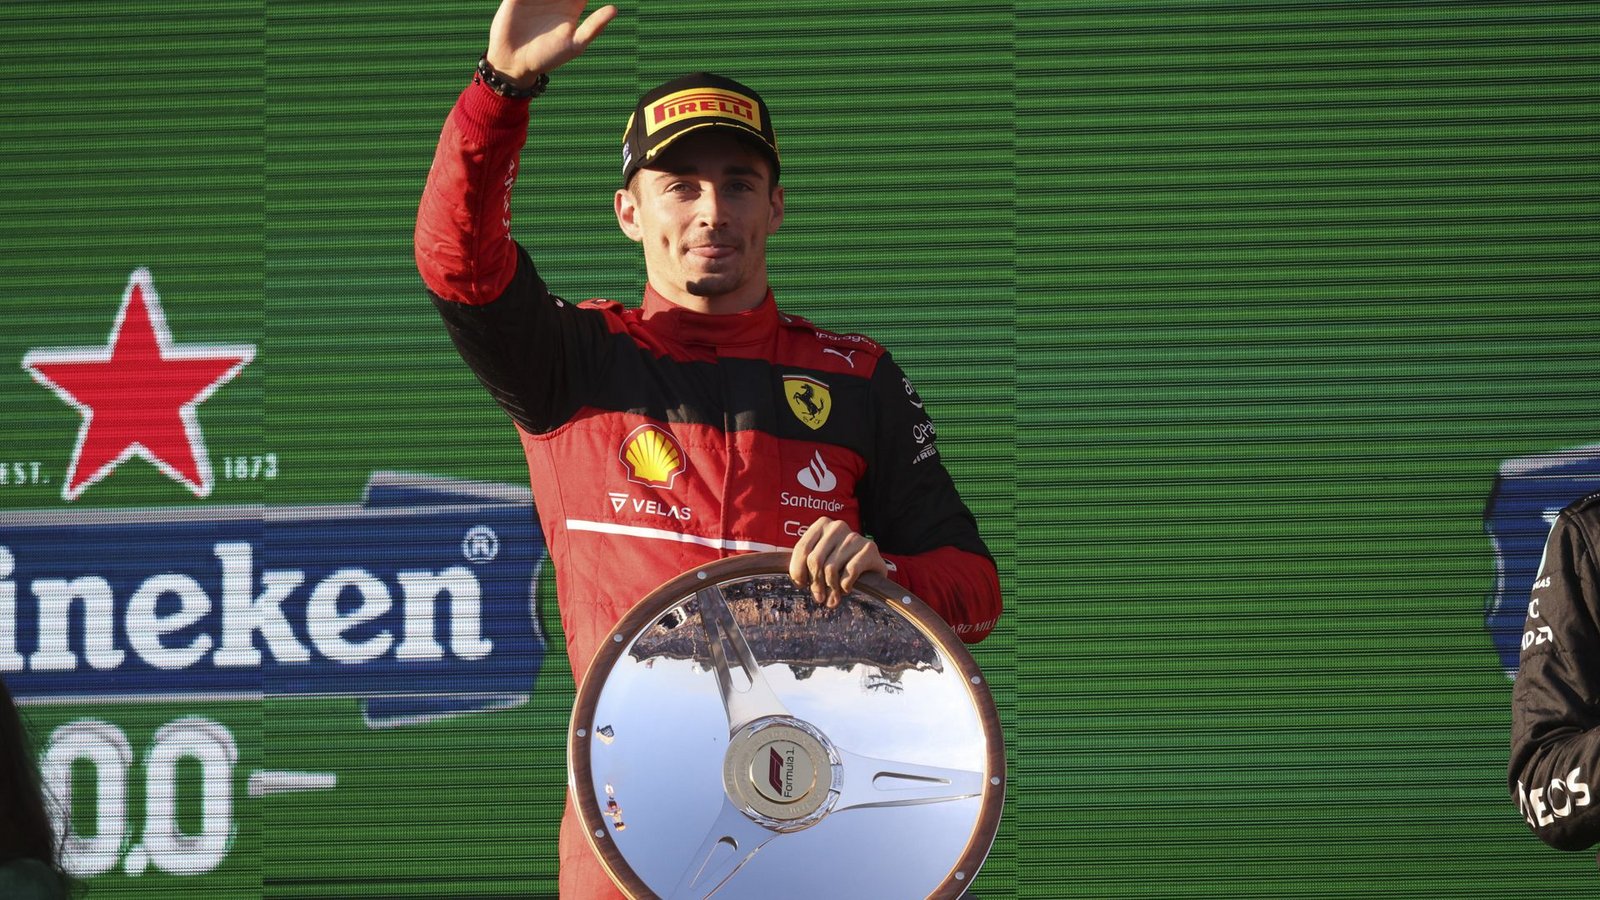 Charles Leclerc gewann beim Grand Prix in Australien – und die Ferraristi erwarten nun, dass er  am Sonntag auch für einen Heimsieg in Imola sorgt.Foto: dpa/Asanka Brendon Ratnayake